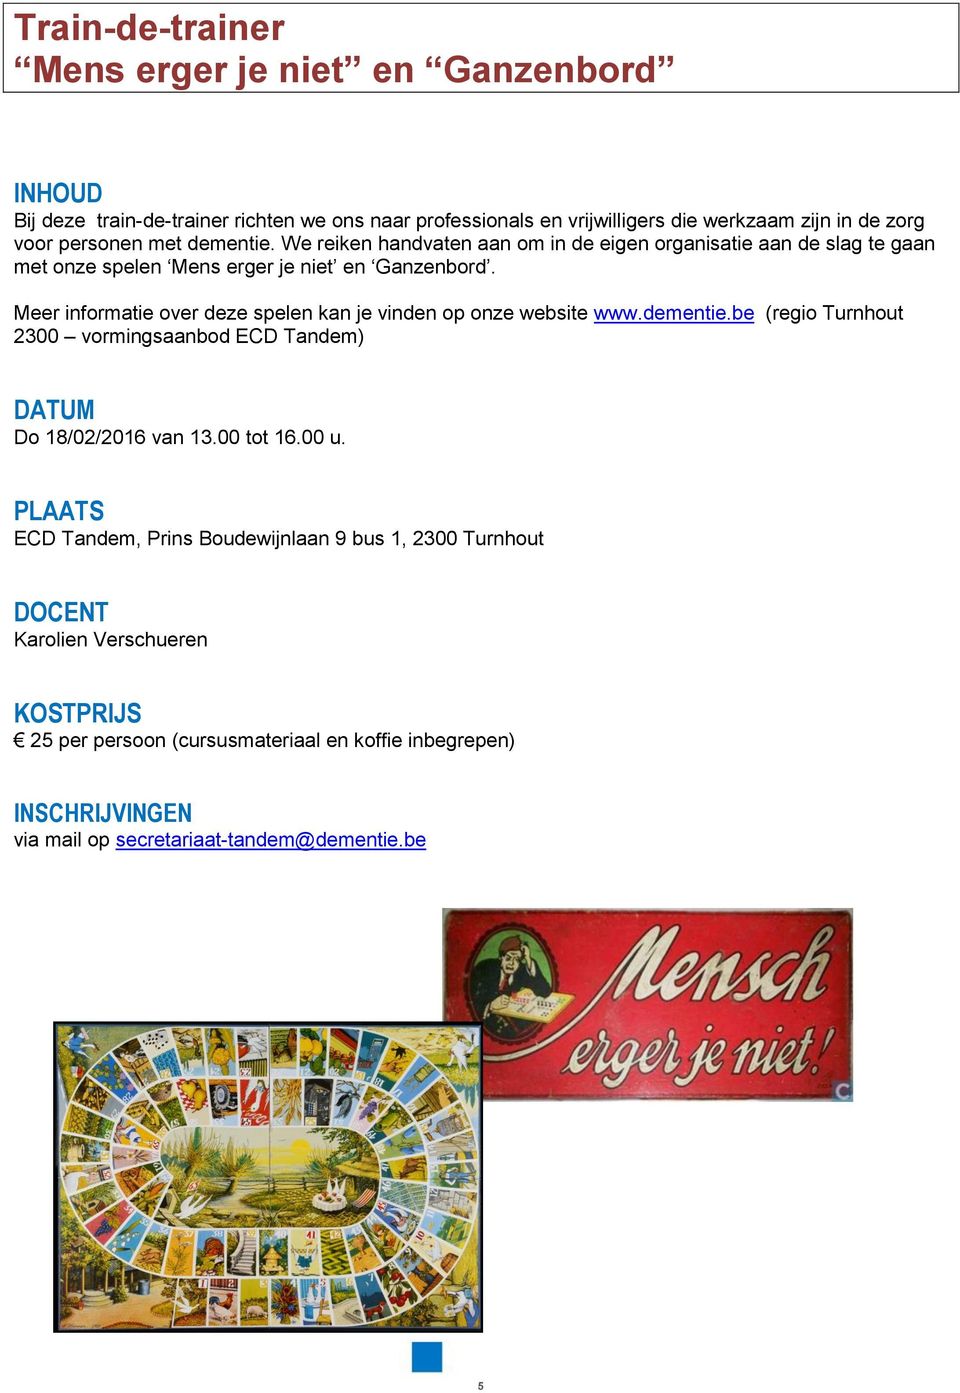 Meer informatie over deze spelen kan je vinden op onze website www.dementie.be (regio Turnhout 2300 vormingsaanbod ECD Tandem) DATUM Do 18/02/2016 van 13.00 tot 16.00 u.